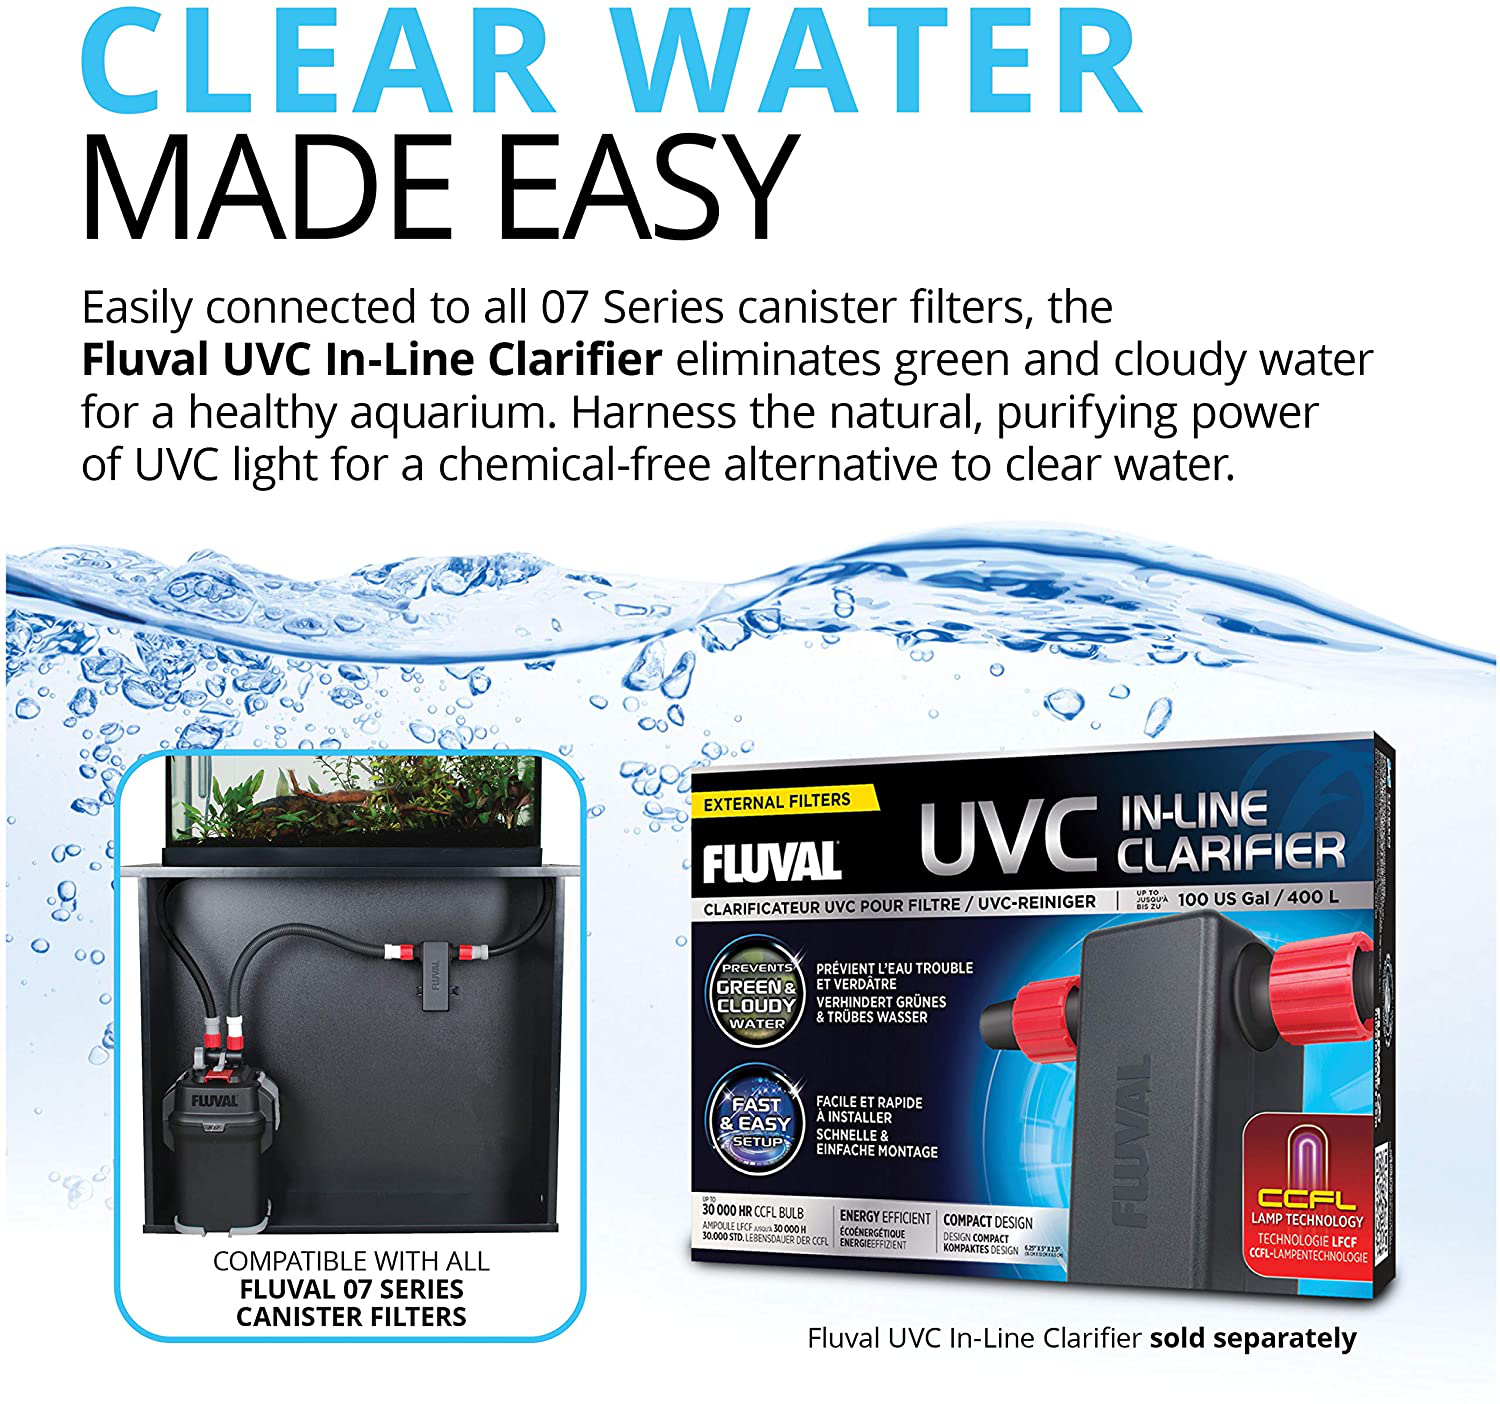 Clarificateur UVC Fluval pour filtre, jusqu'à 100 gal US